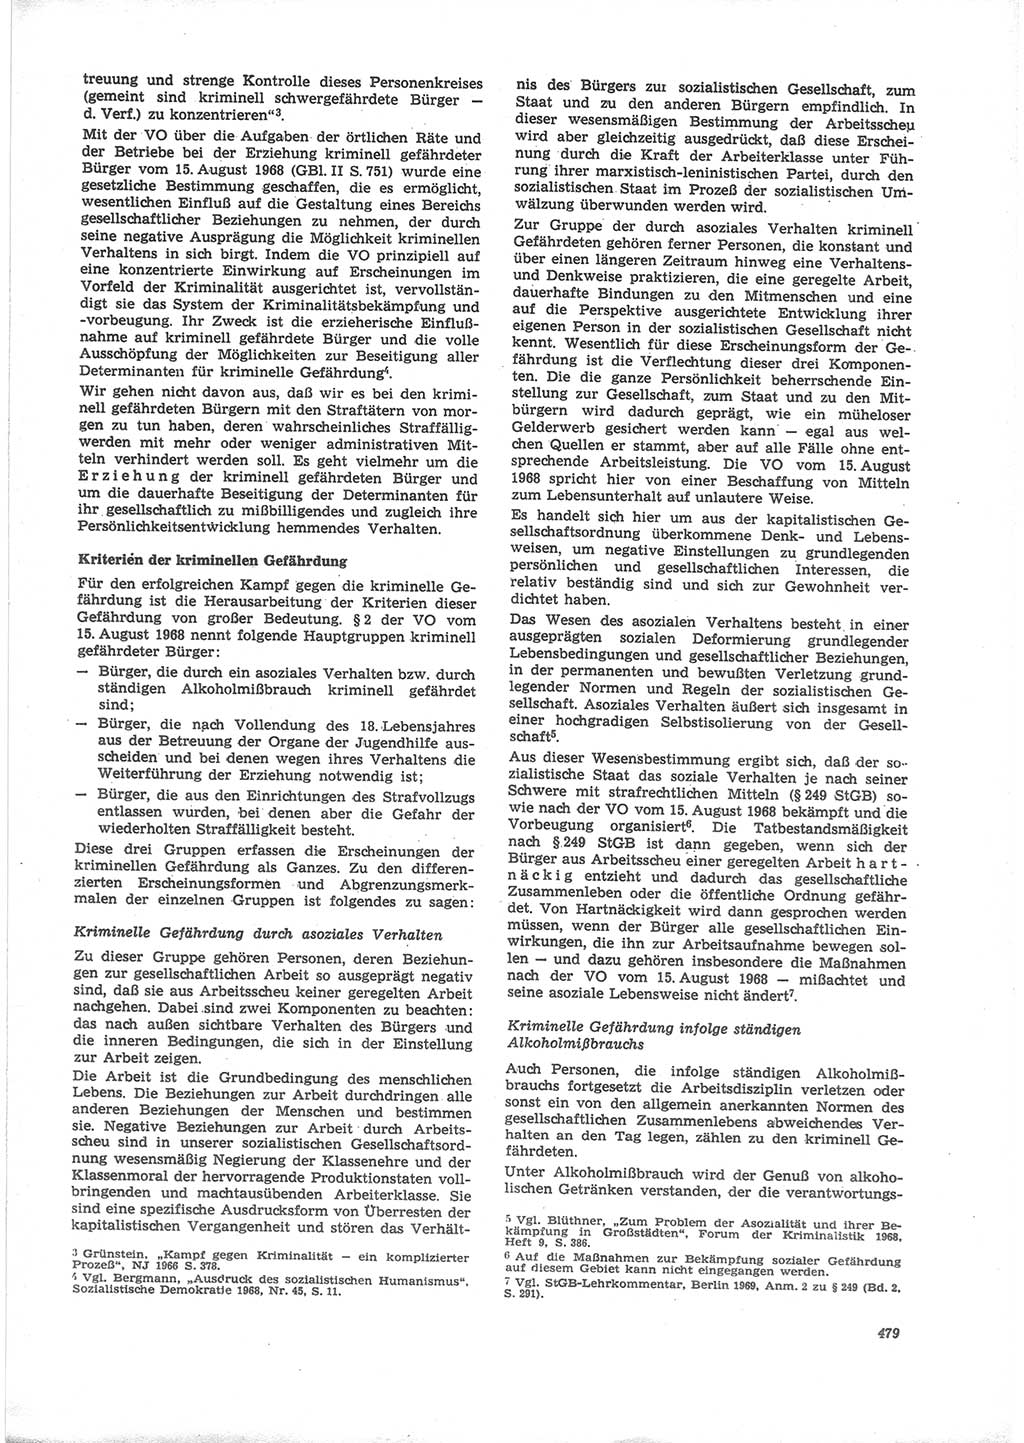 Neue Justiz (NJ), Zeitschrift für Recht und Rechtswissenschaft [Deutsche Demokratische Republik (DDR)], 24. Jahrgang 1970, Seite 479 (NJ DDR 1970, S. 479)